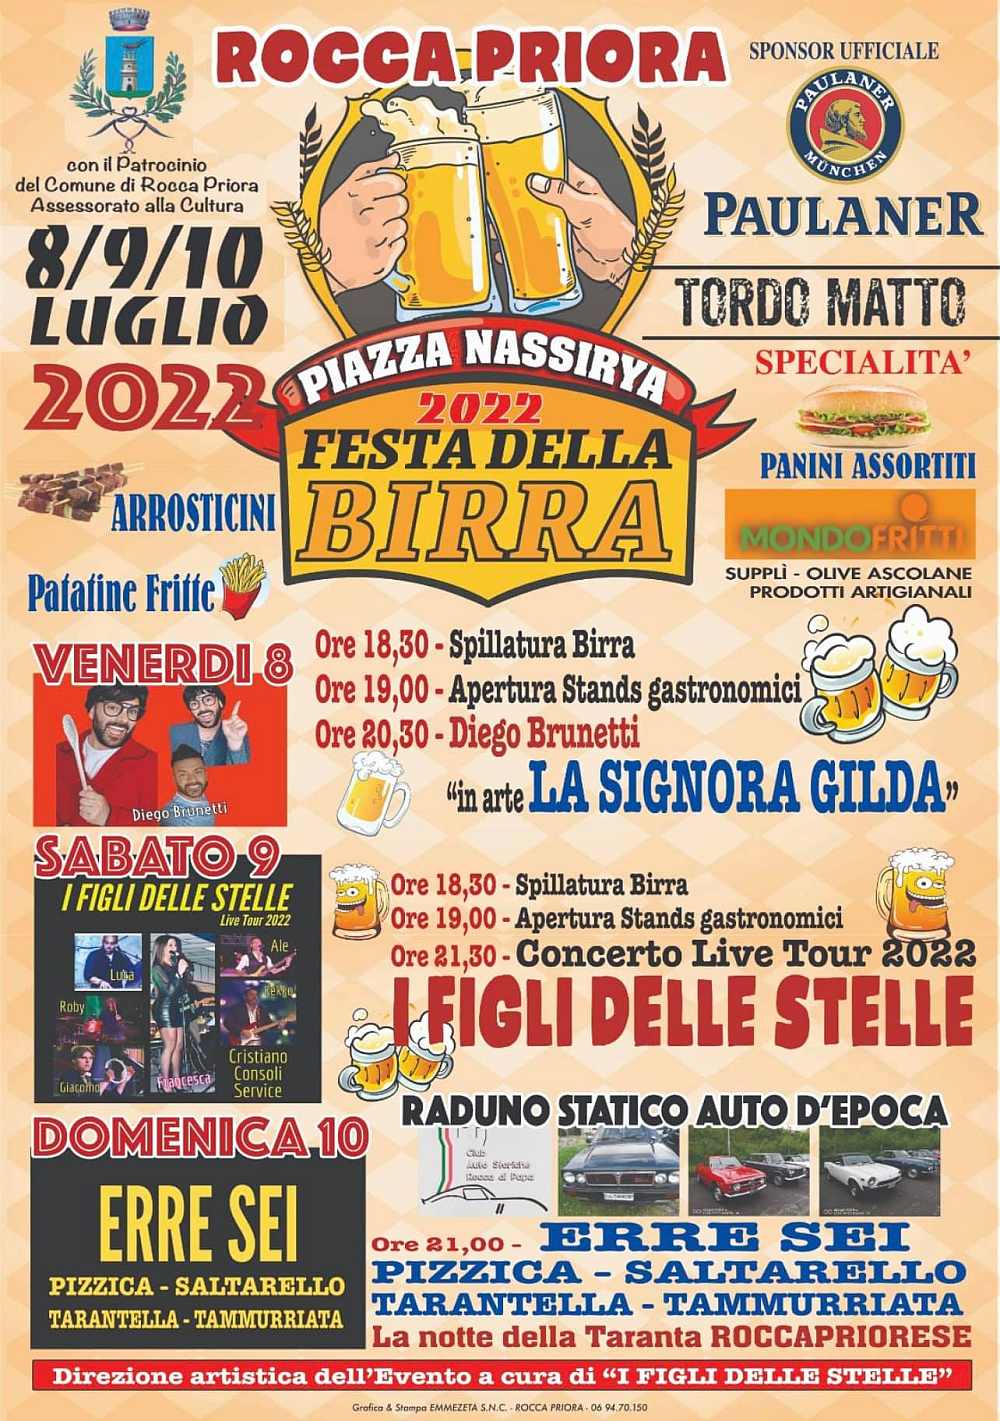 Rocca Priora (RM)
"Festa della Birra"
8-9-10 Luglio 2022 